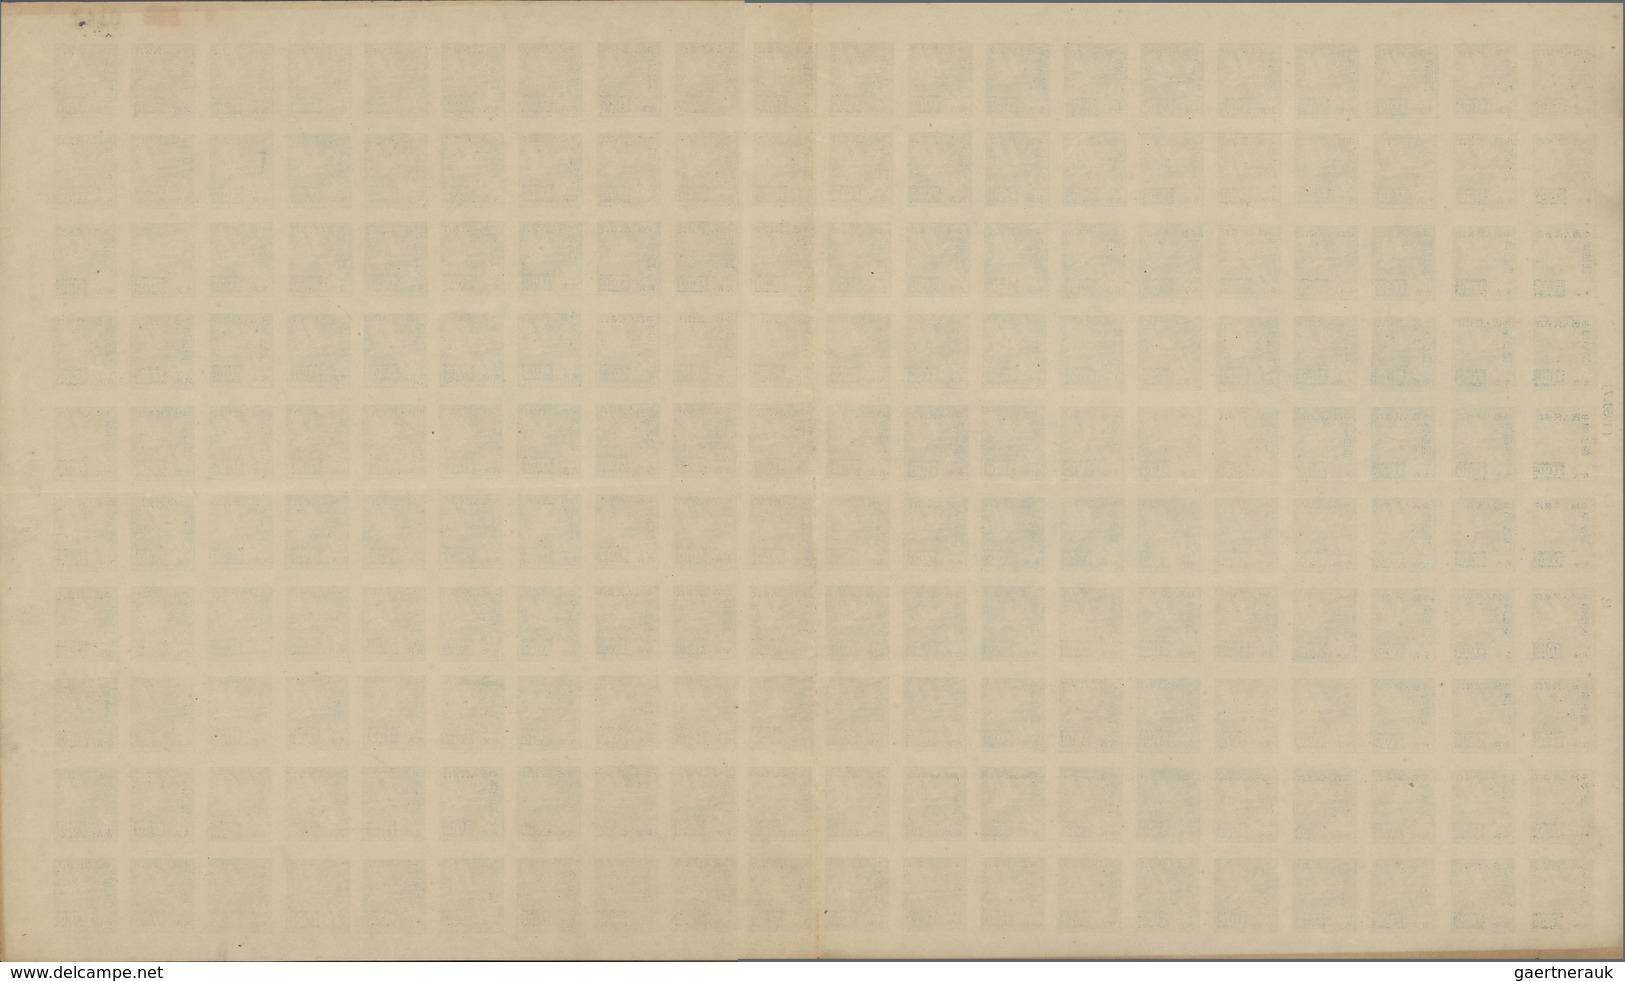 China - Volksrepublik: 1950, Definitives overprinted on Nationalist Whistling Swans (SC5), blocks of